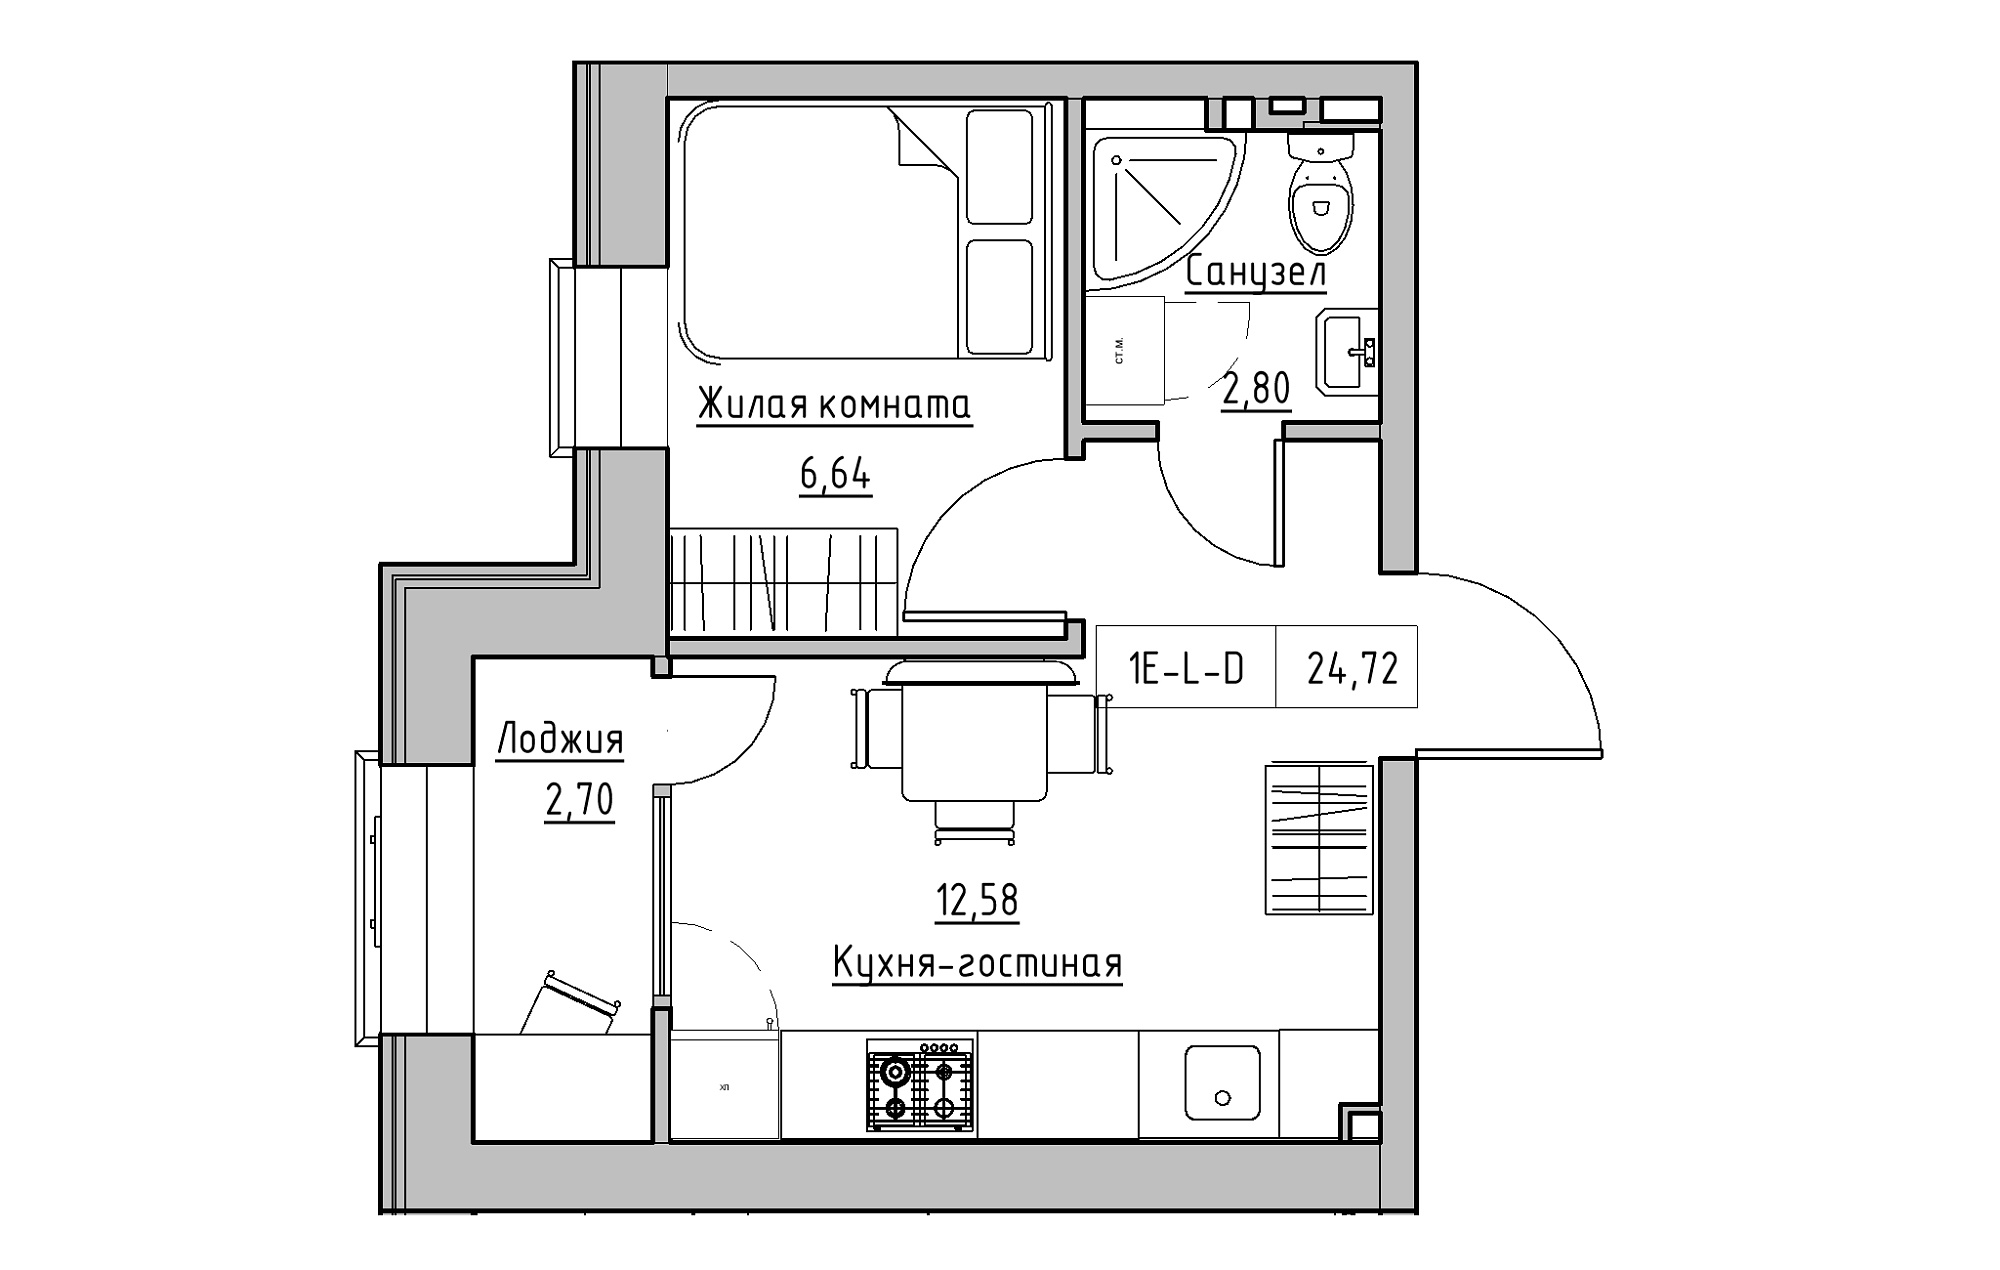 Планировка 1-к квартира площей 24.72м2, KS-018-04/0013.